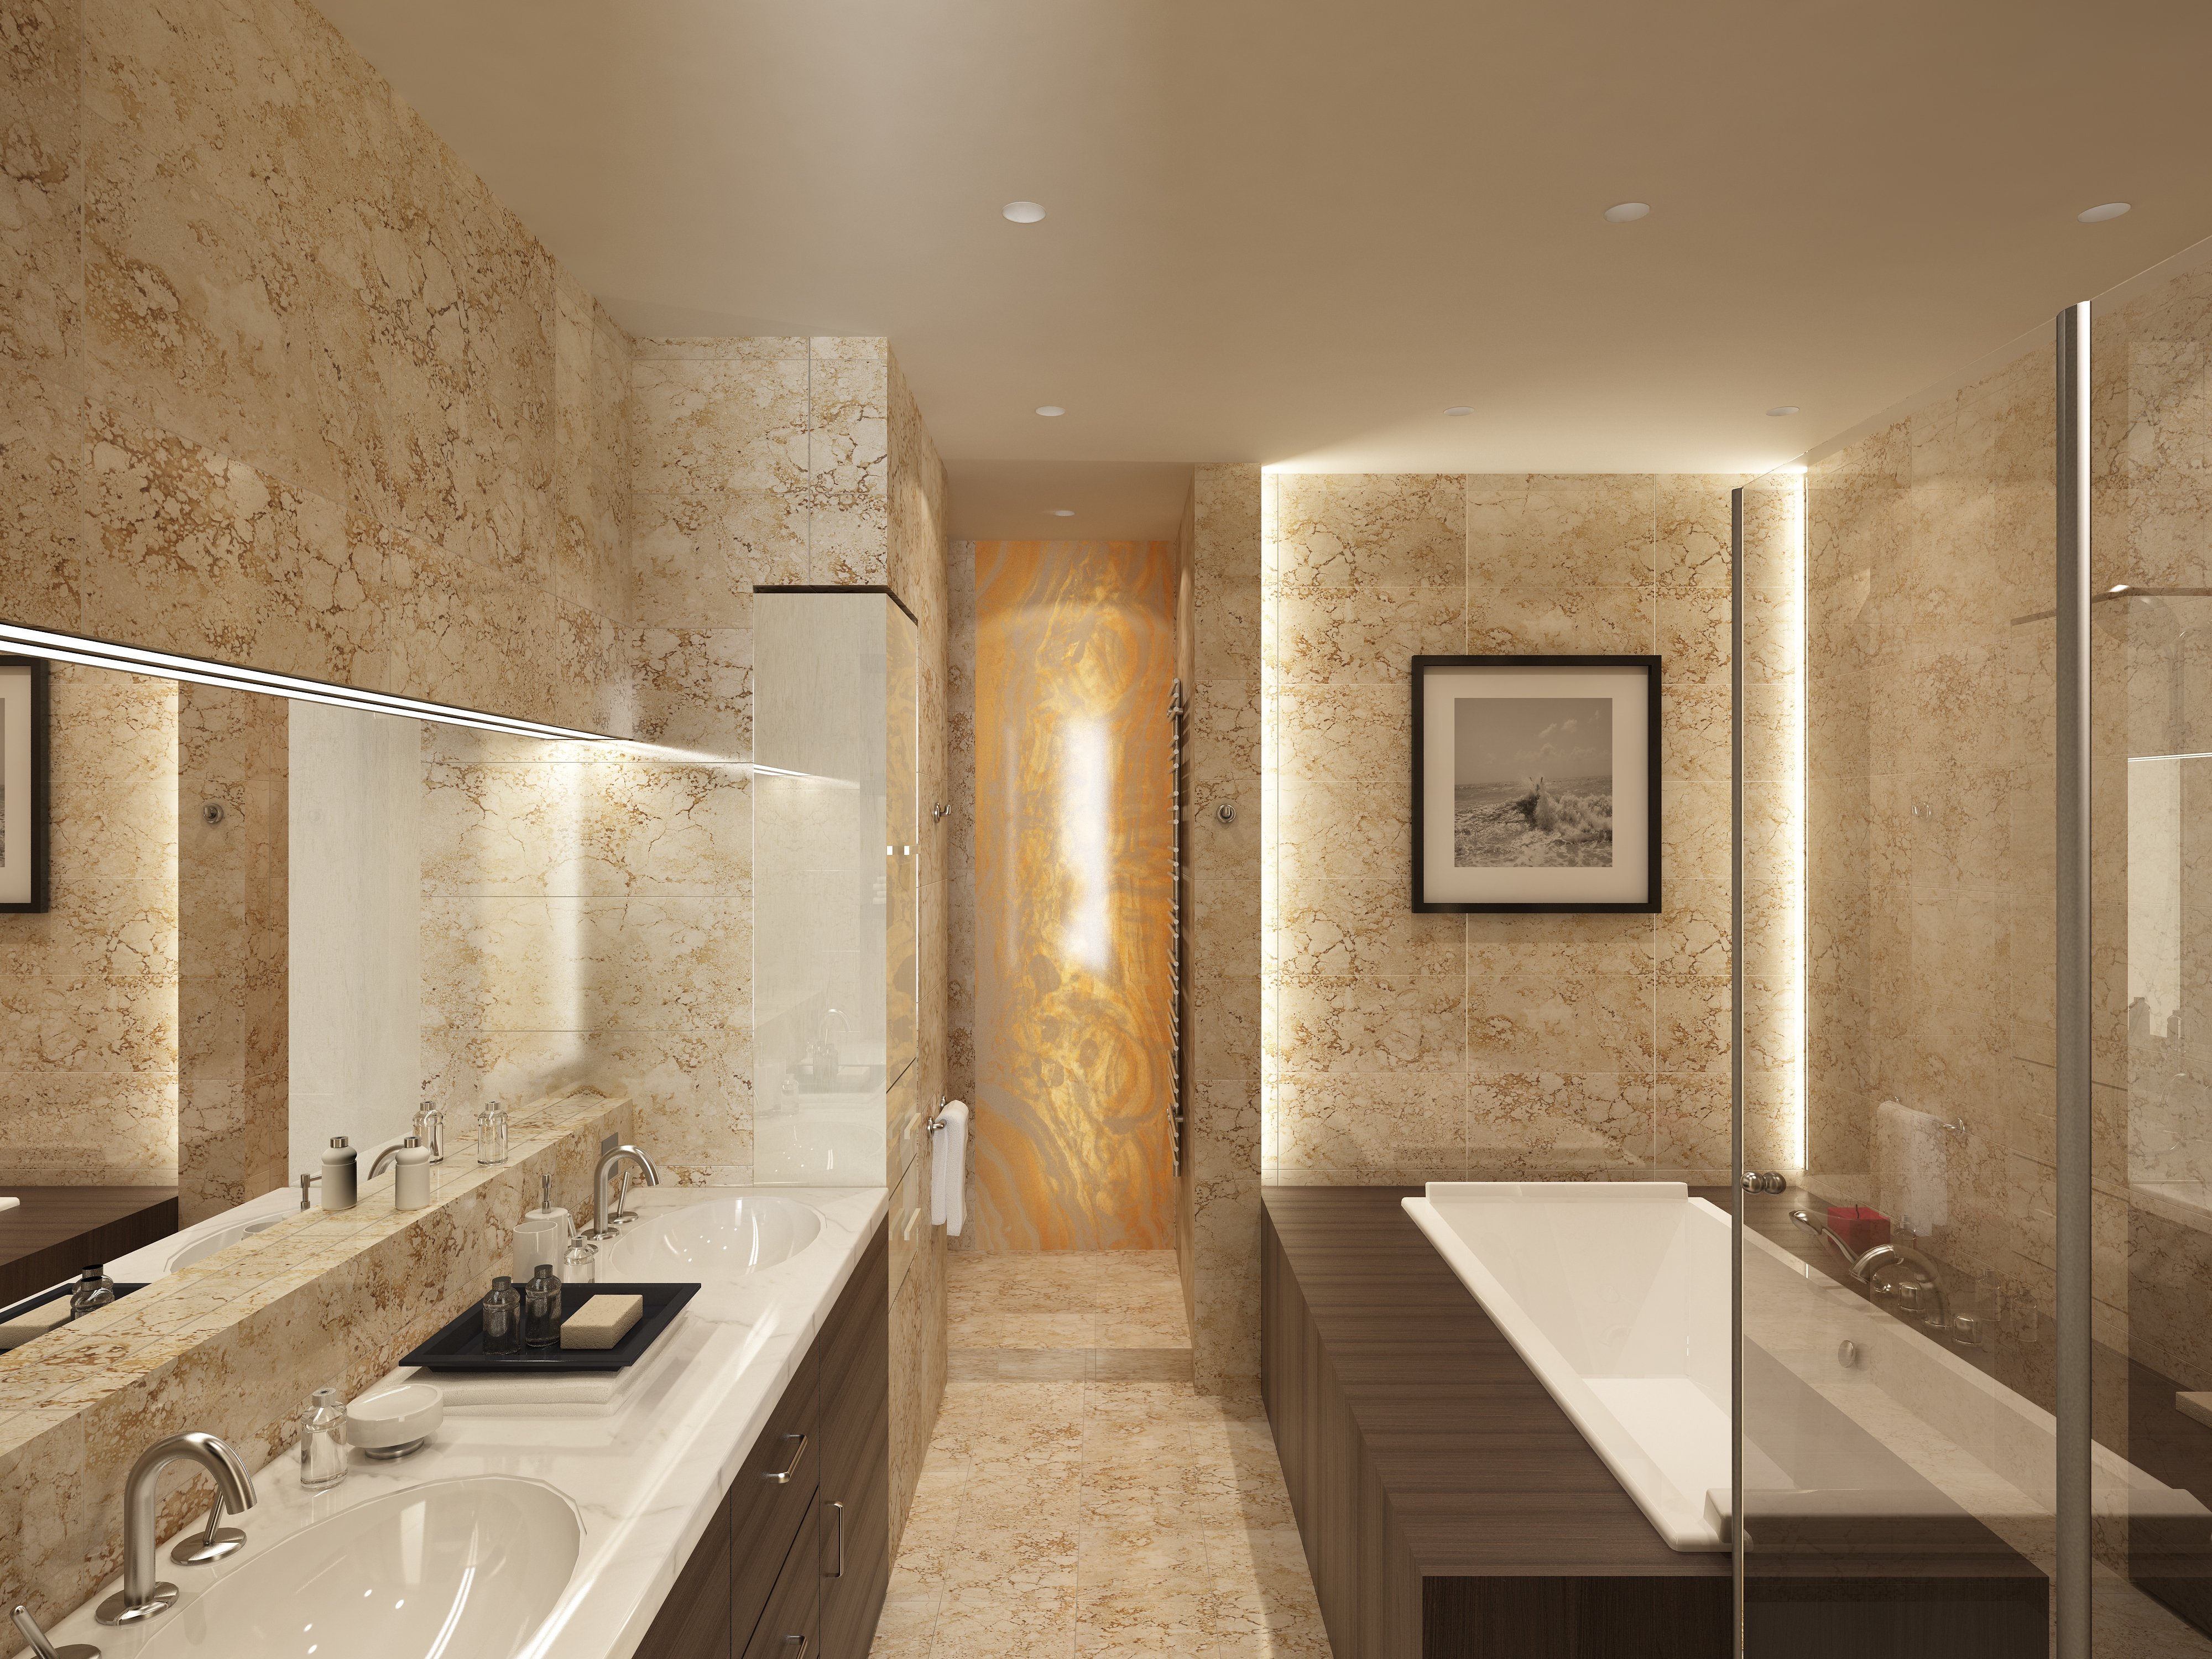 Простой и красивый дизайн ванной комнаты